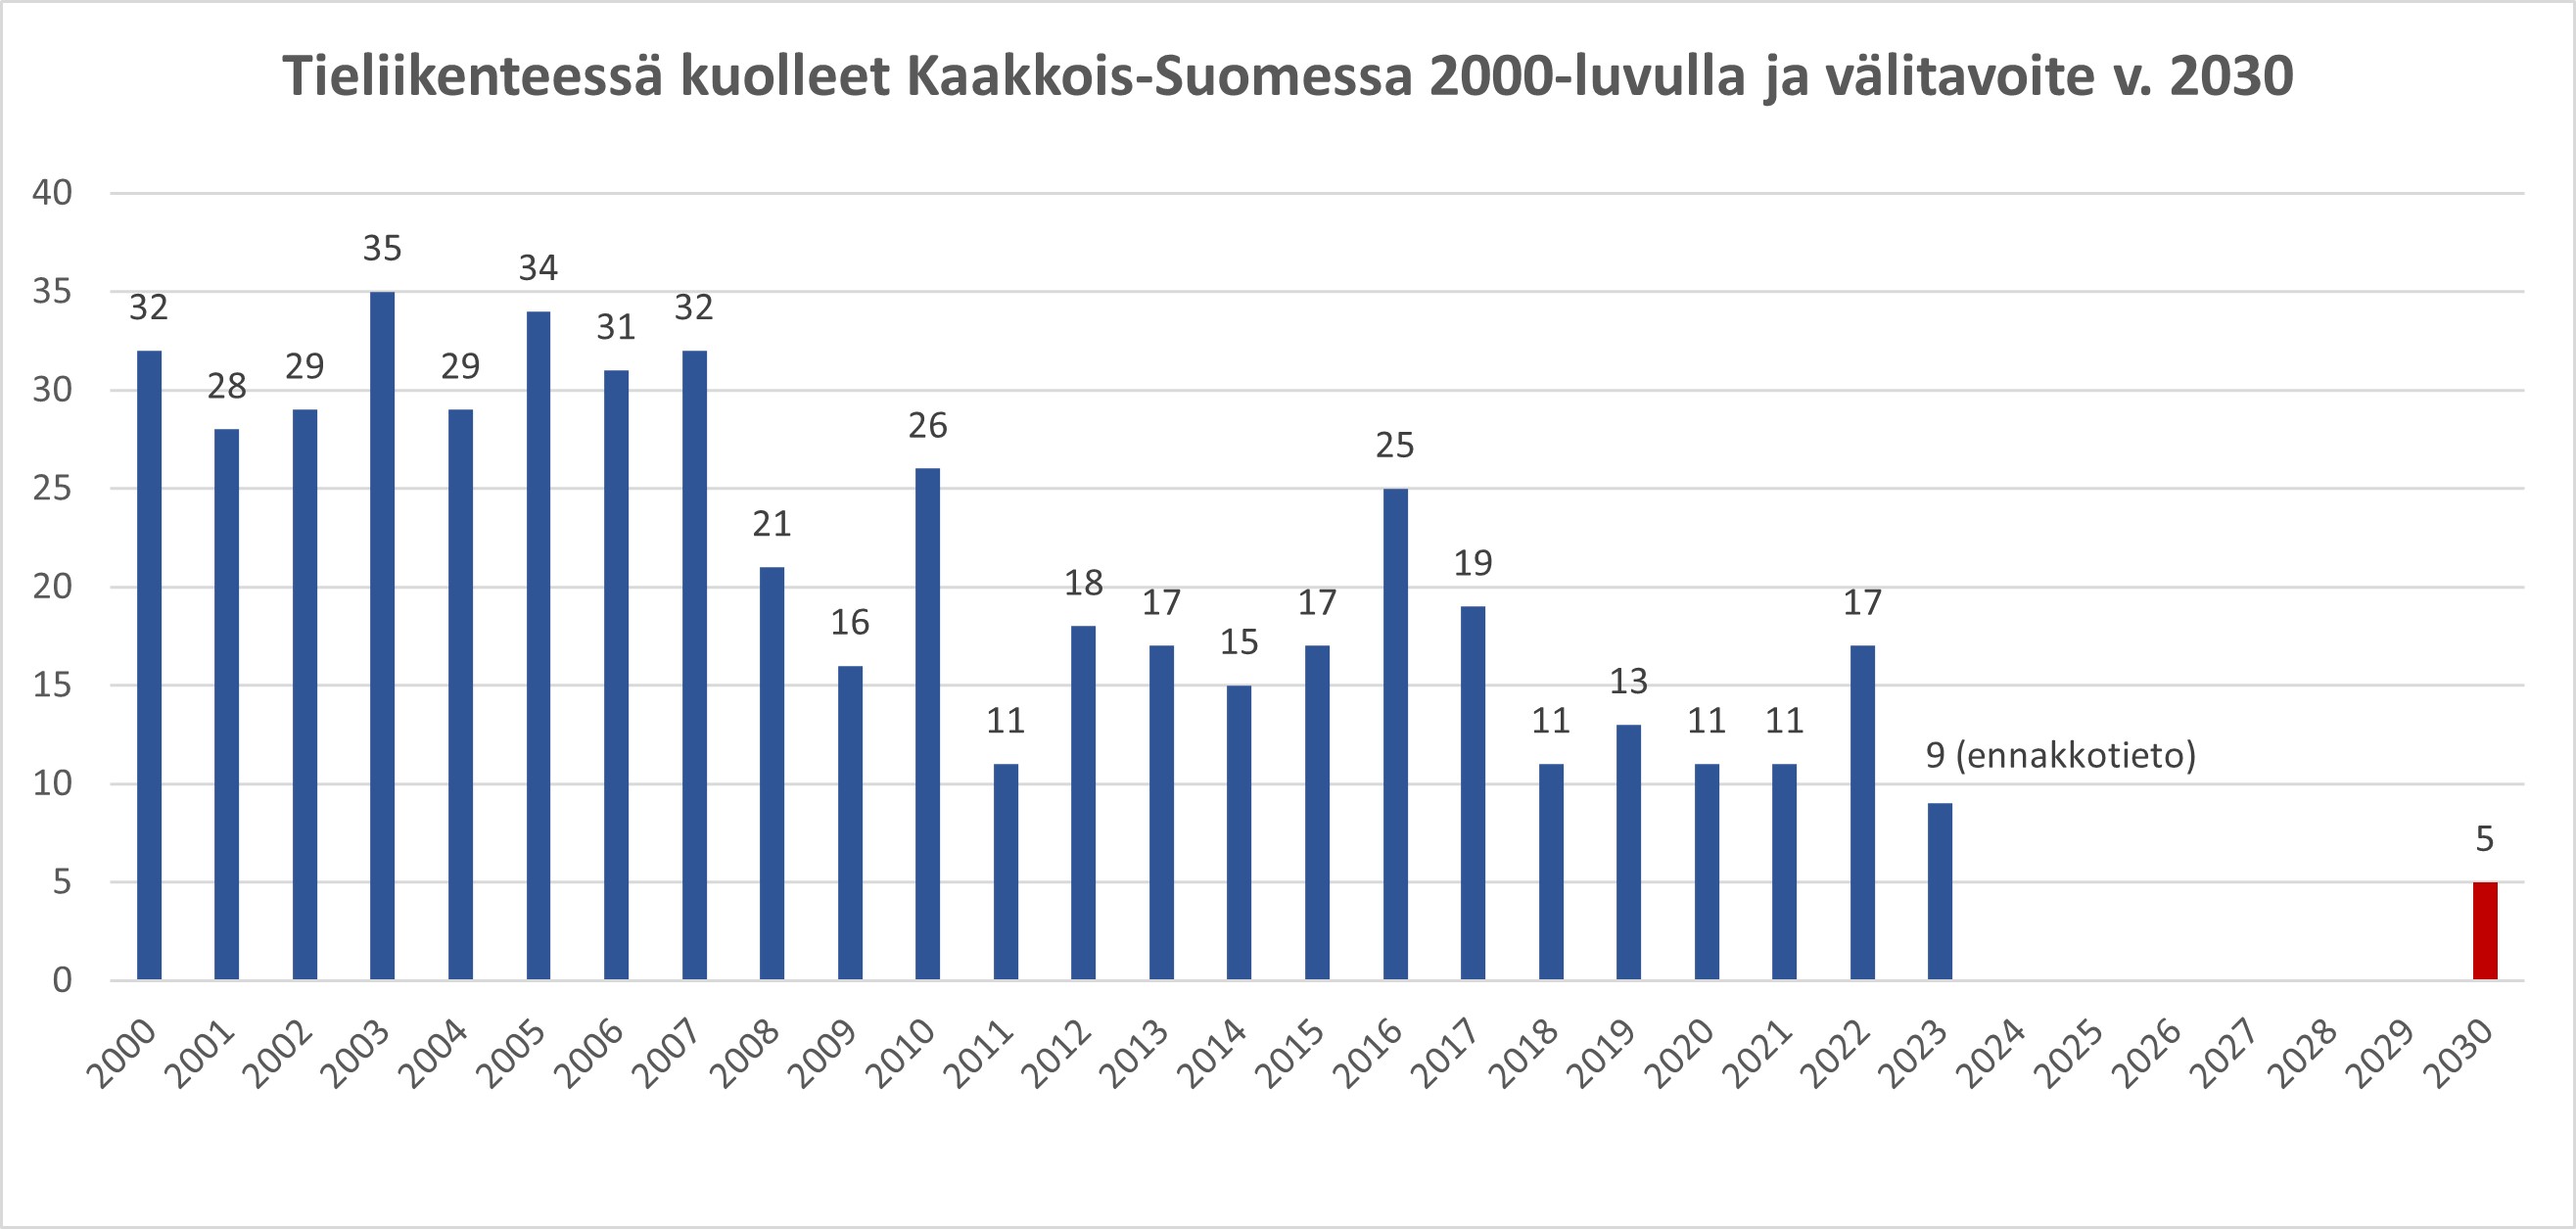 Kuvaajassa on esitetty Kaakkois-Suomessa tiiliikenteessä kuolleet 2000-luvulla ja alueellinen nollavisioon pohjautuva välitavoite vuodelle 2030. 